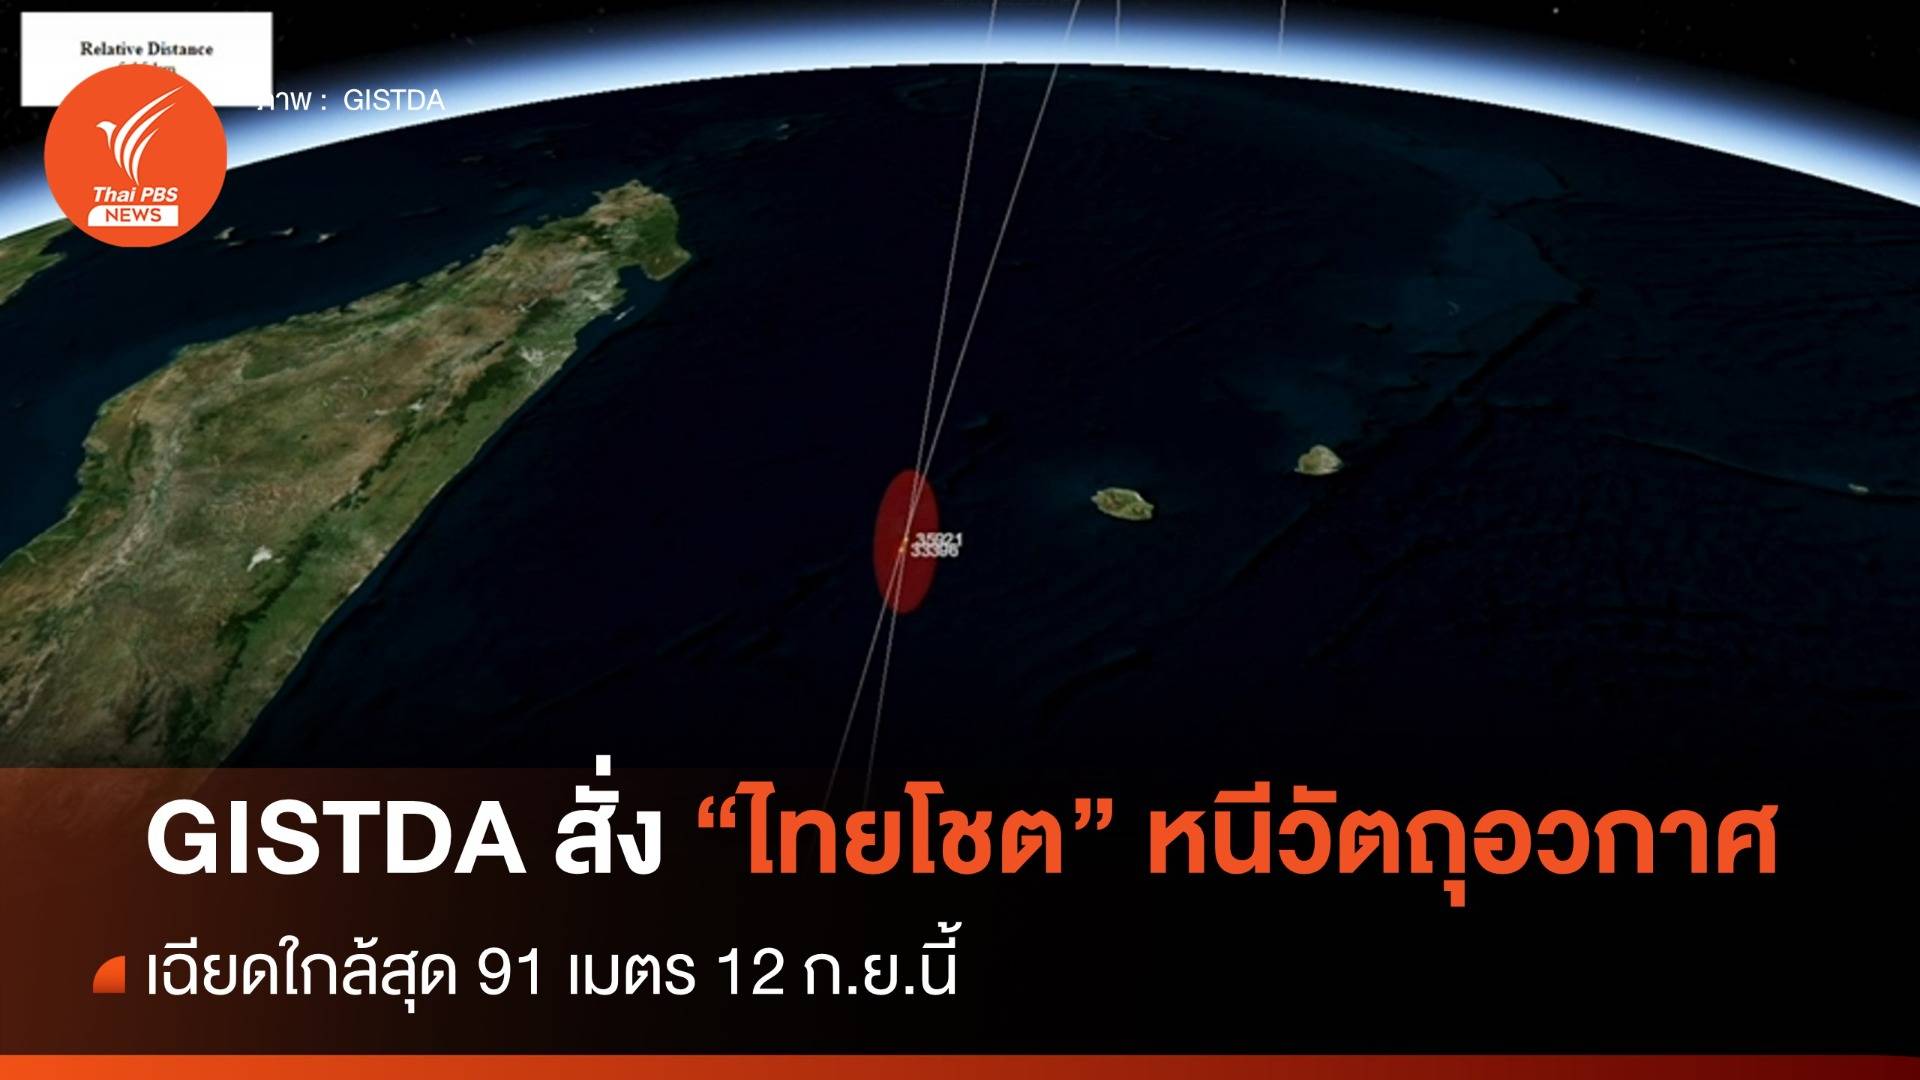 GISTDA สั่งดาวเทียมไทยโชตหนีวัตถุอวกาศเฉียดใกล้สุด 91 เมตร